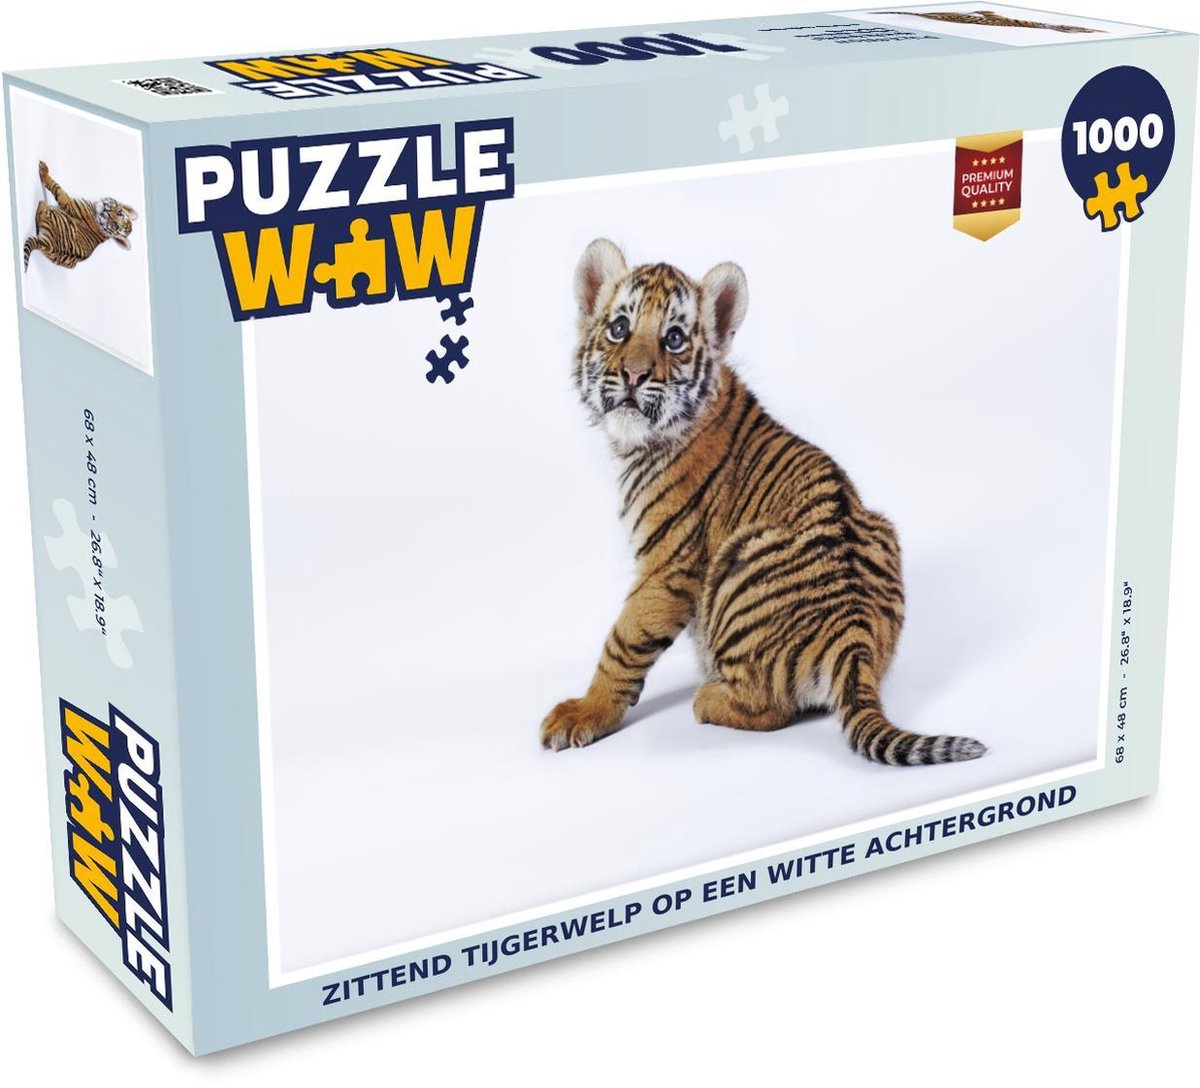 Afbeelding van product Puzzel 1000 stukjes volwassenen Tijger op witte achtergrond 1000 stukjes - Zittend tijgerwelp op een witte achtergrond - PuzzleWow heeft +100000 puzzels